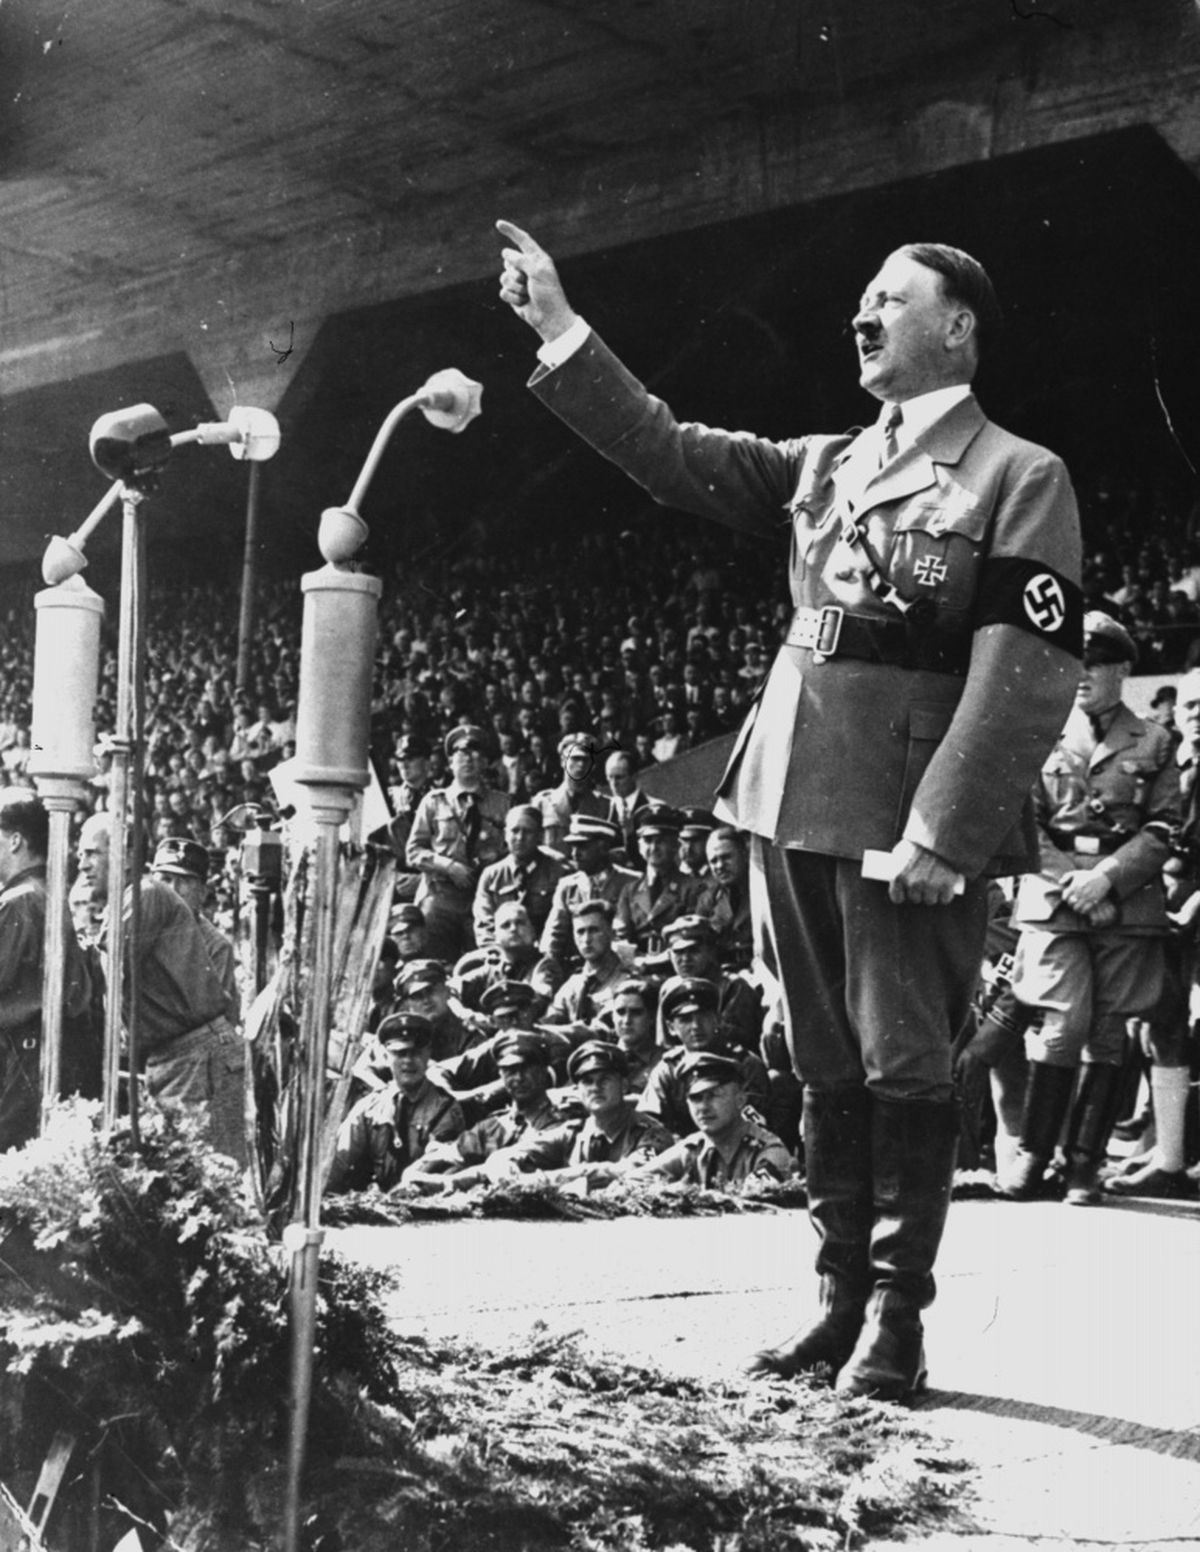 Ārpolitikas jomā gan Hitlers bija ļoti brutāls cilvēks, kurš nepazina bailes un ienīda visu. Ļoti iespējams, ka viņam bija metamfetamīna atkarība. Viena no teorijām liecina, ka Hitlers, lai spētu izturēt politisko spriedzi, kādu radīja viņa valdīšanas stils, ķērās pie narkotikām - Hitlers ļoti regulāri lietoja metamfetamīnu un citus stimulatorus.